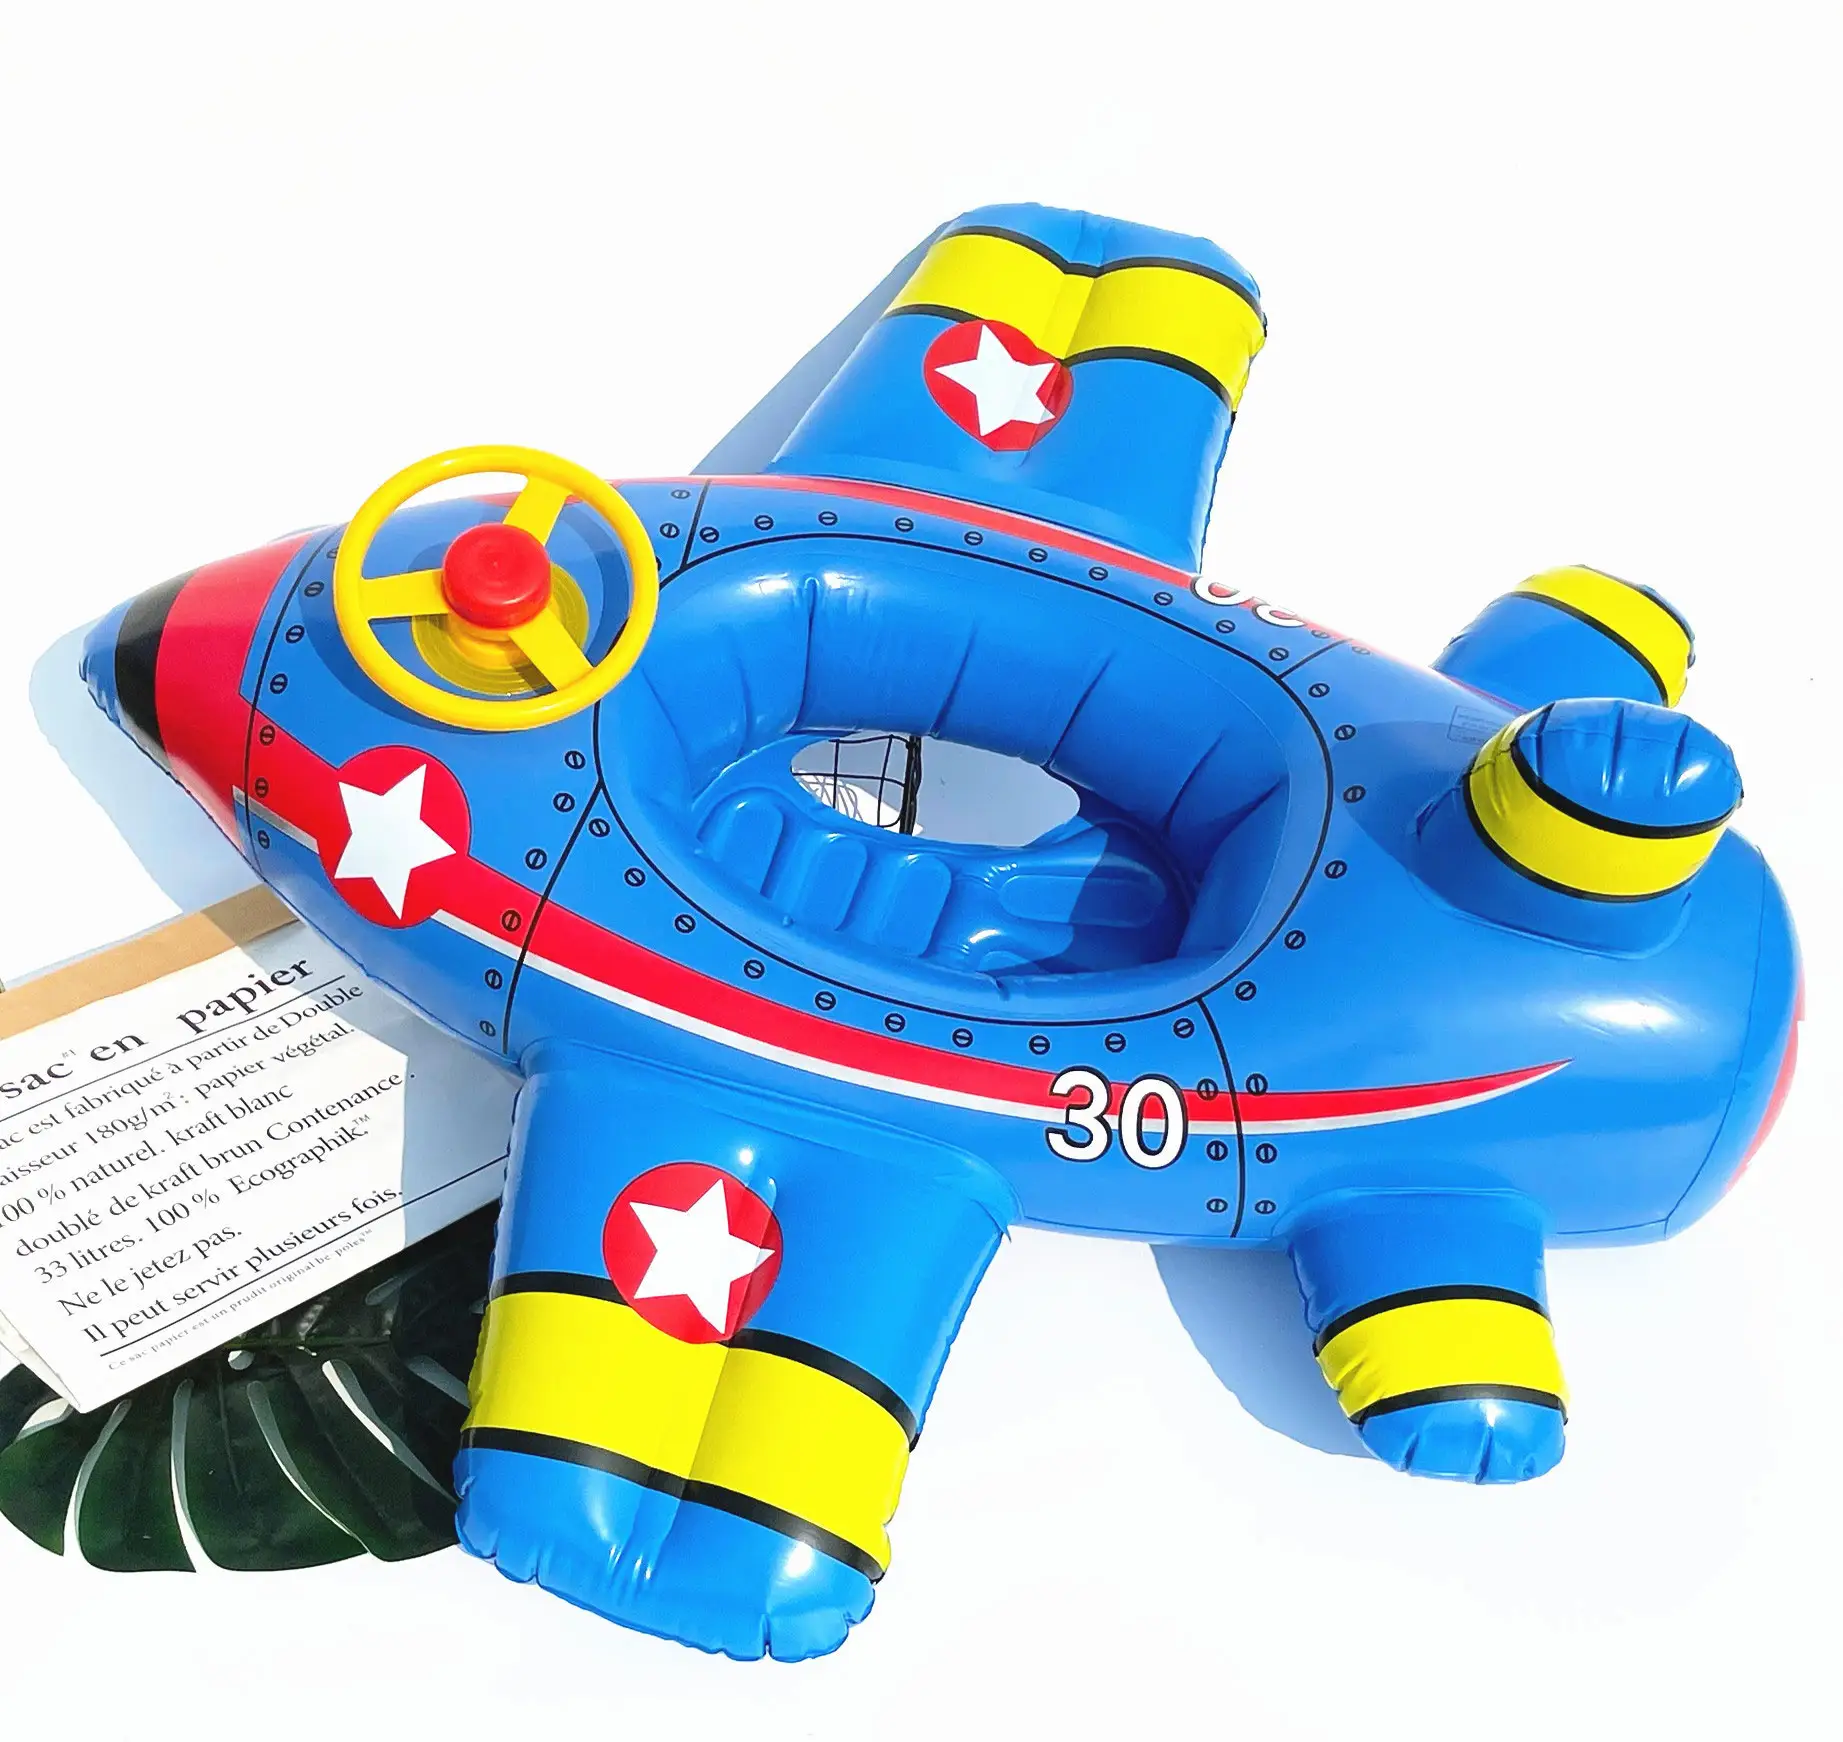 スイミングプールフロートリングチューブ飛行船子供のためのかわいいパターンチューブフローティングデザインインフレータブルスイムリング面白いビーチパーティーのおもちゃ